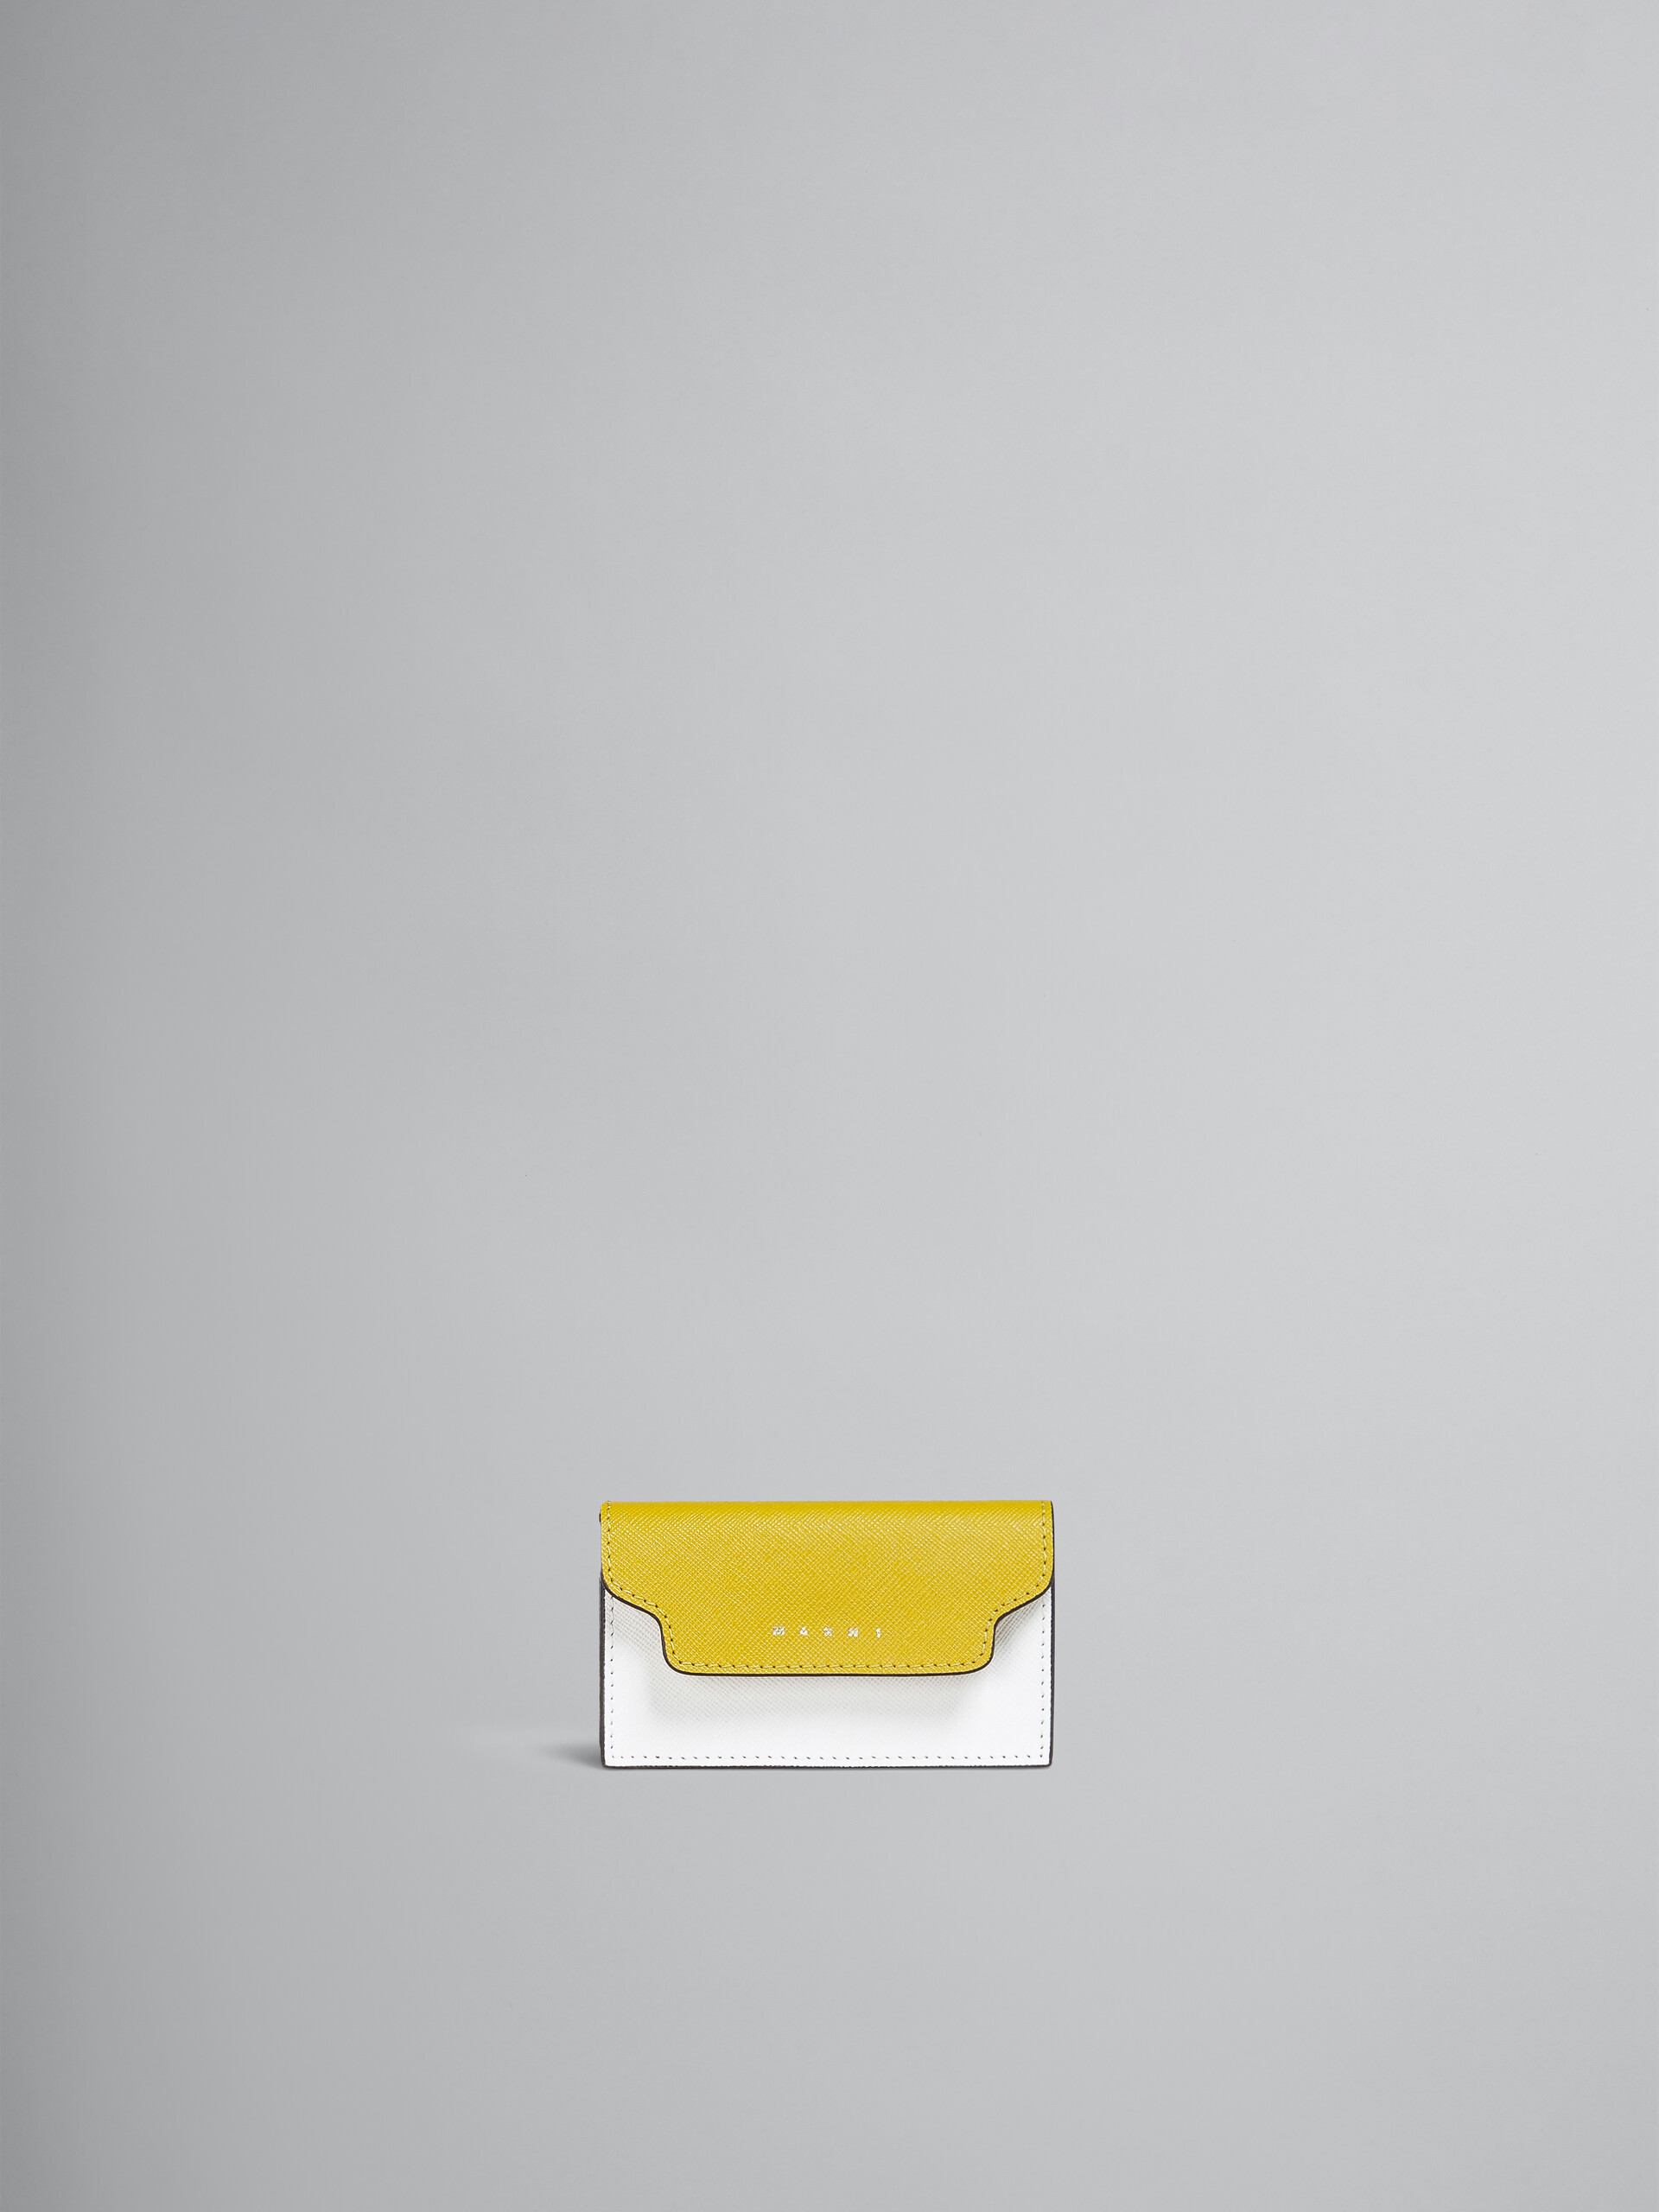 Portabiglietti da visita in saffiano giallo e bianco - Portafogli - Image 1